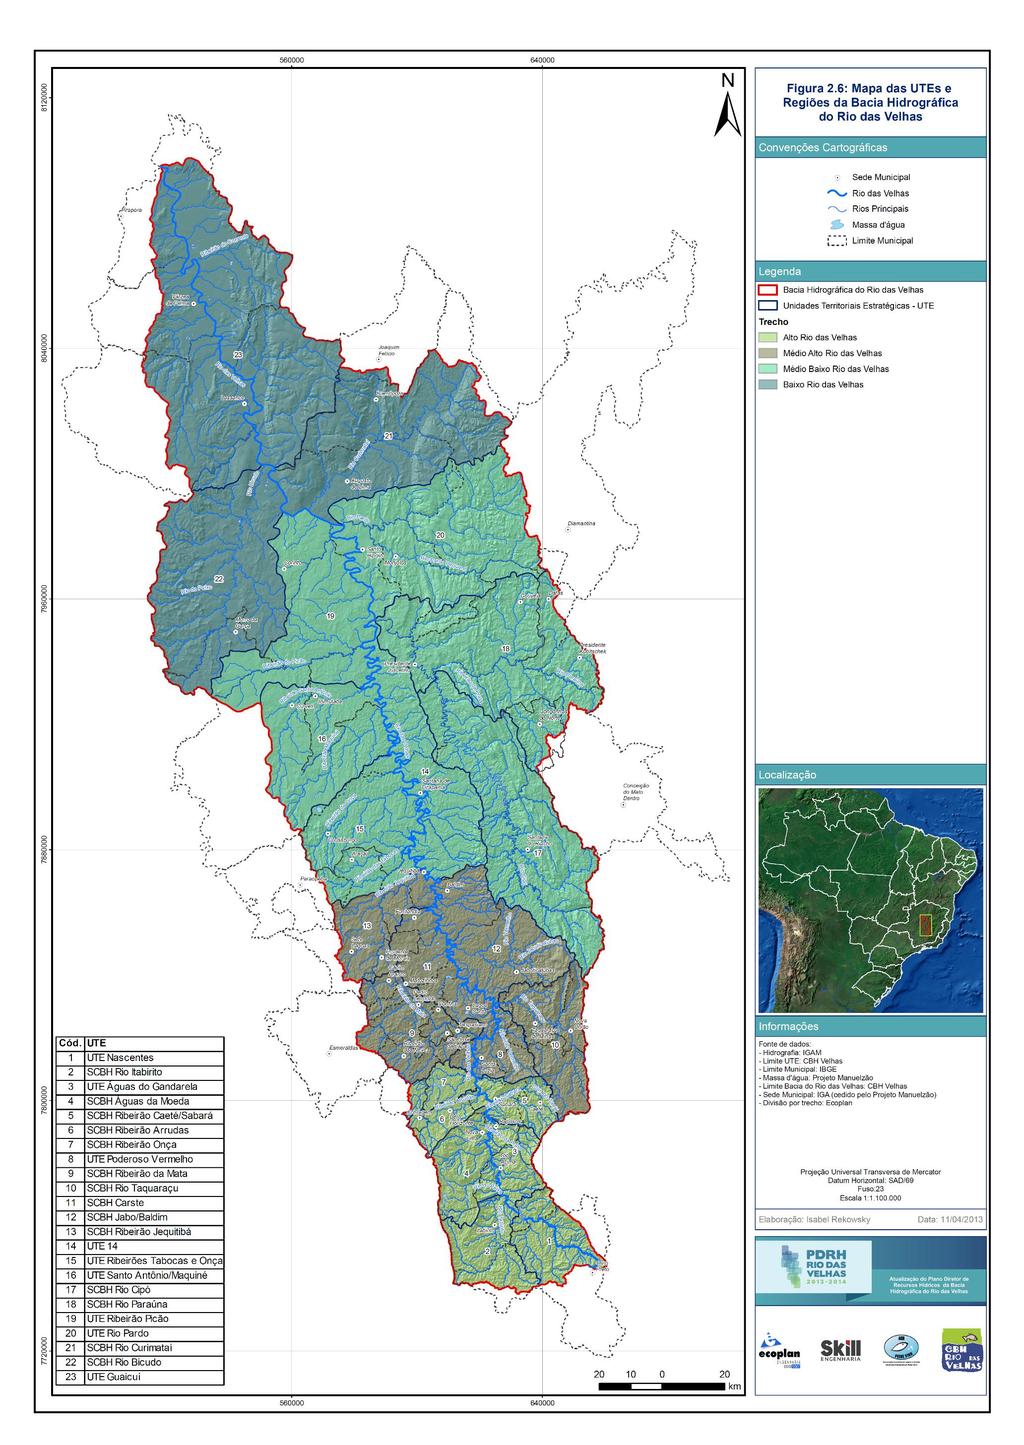 Figura 1: Mapa das UTEs e regiões da bacia hidrográfica do rio das Velhas Fonte: